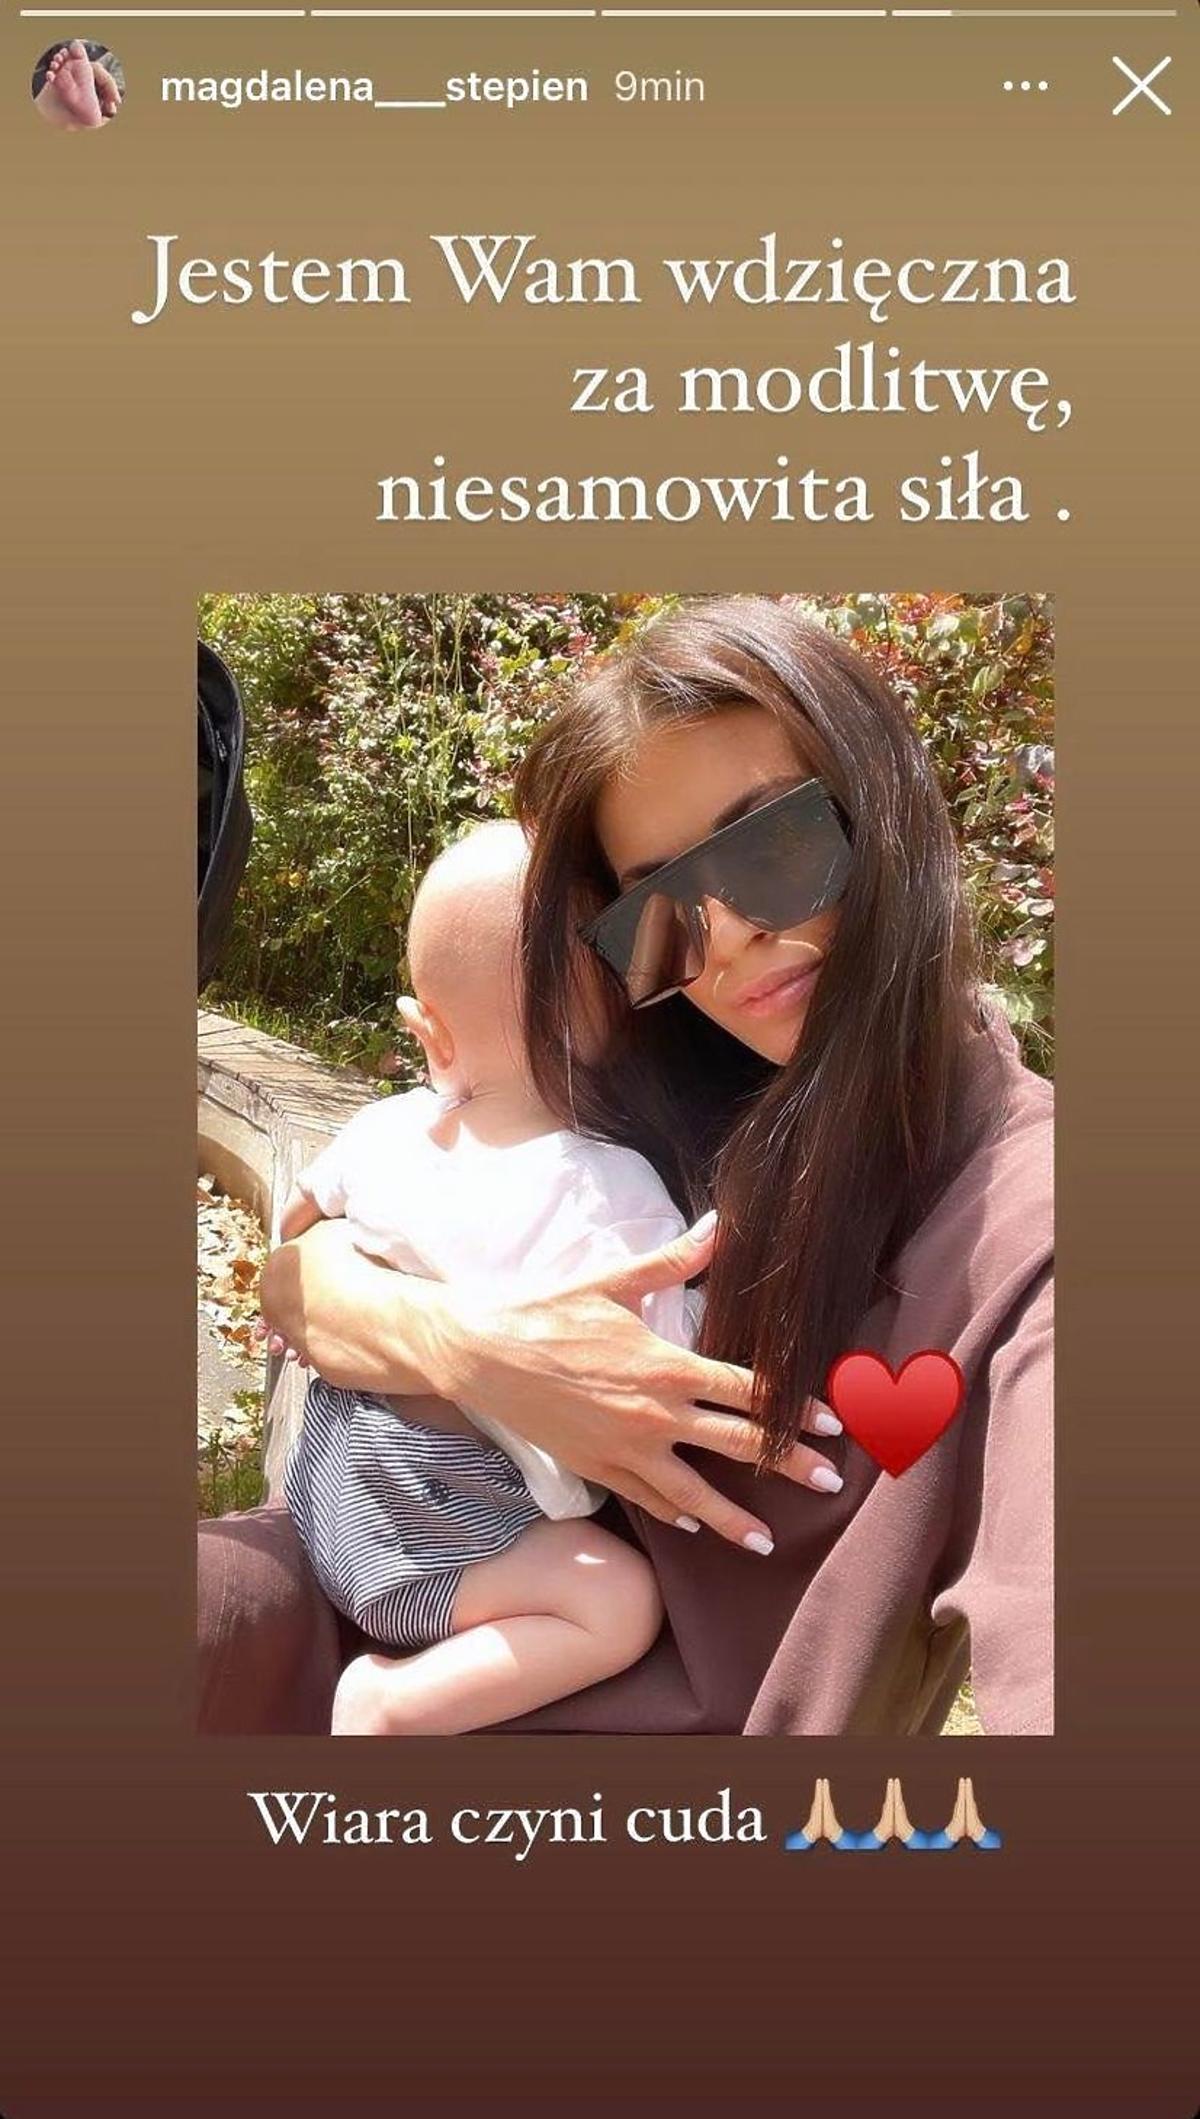 Magdalena Stępień pokazała nowe zdjęcie z synem